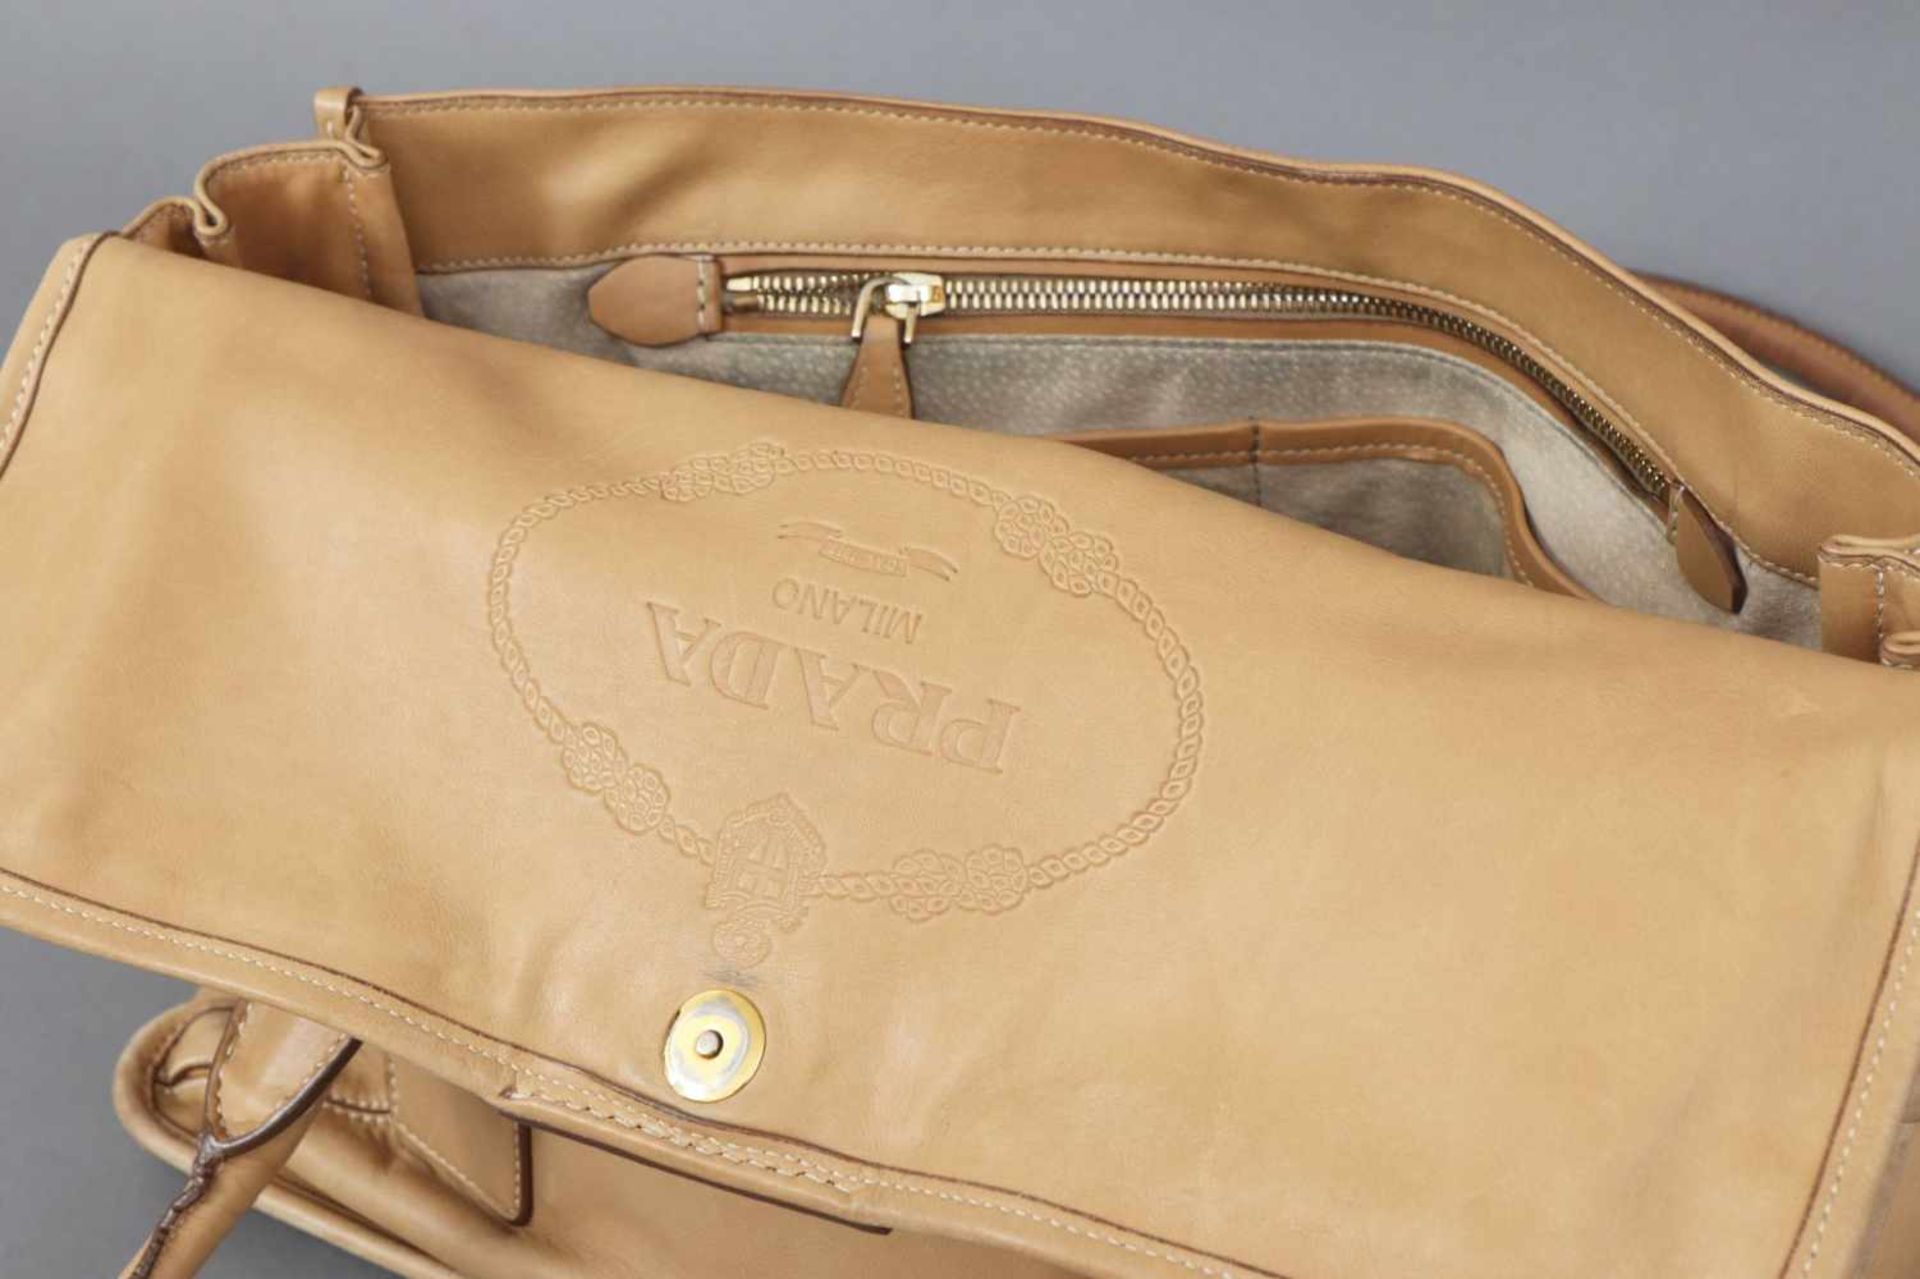 PRADA Handtasche hellbeiges Leder, Kuvertform, 2 Trageriemen, vergoldeter Prada-Schriftzug auf der - Image 4 of 4